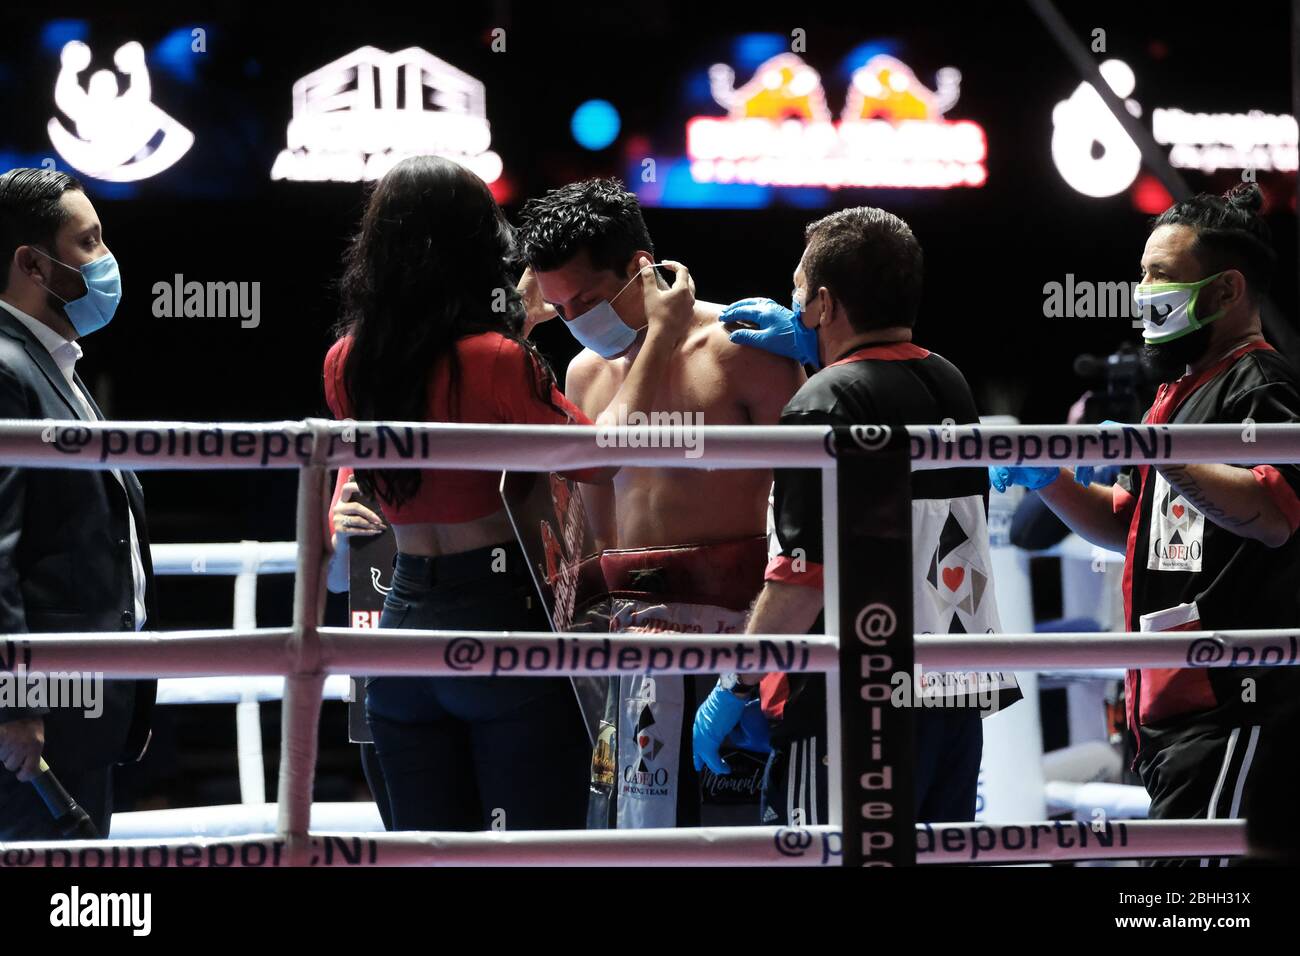 Managua, Nicaragua. April 2020. Der Boxer Robin Zamora kommt vor dem Kampf  in der Alexis-Argüello-Arena der Mundschutz entfernt. Mitten in der  Corona-Pandemie wurde in Nicaragua vor Zuschauern Boxen ausgetragen. Ein  Abend mit